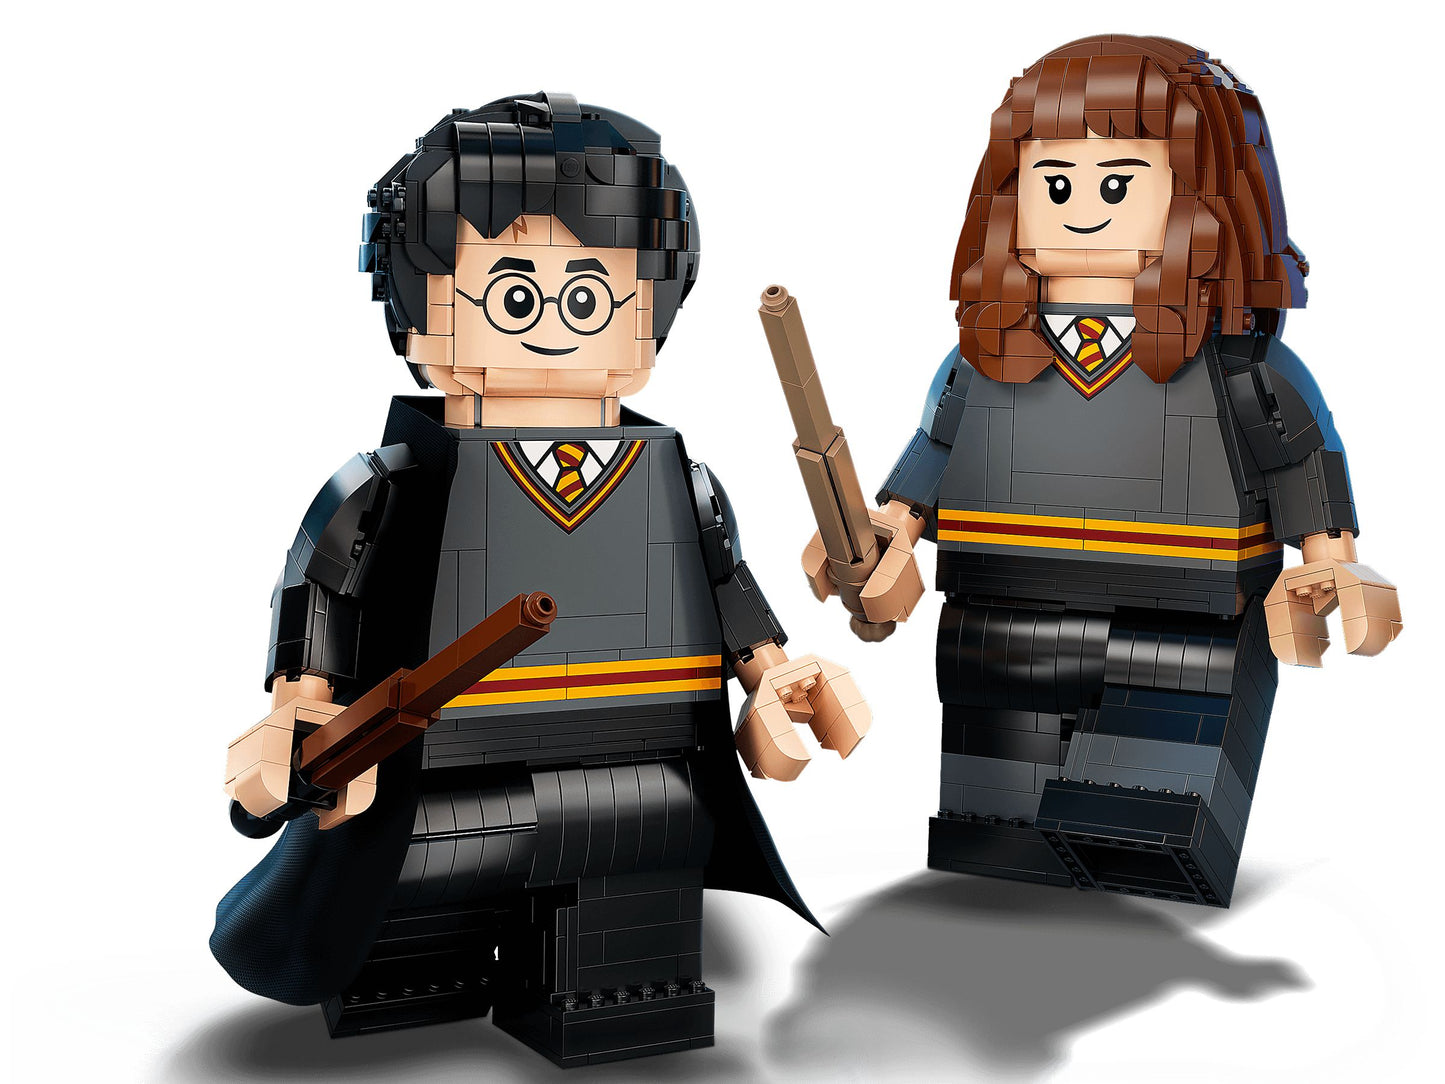 Harry Potter 76393 Harry Potter & Hermine Granger™